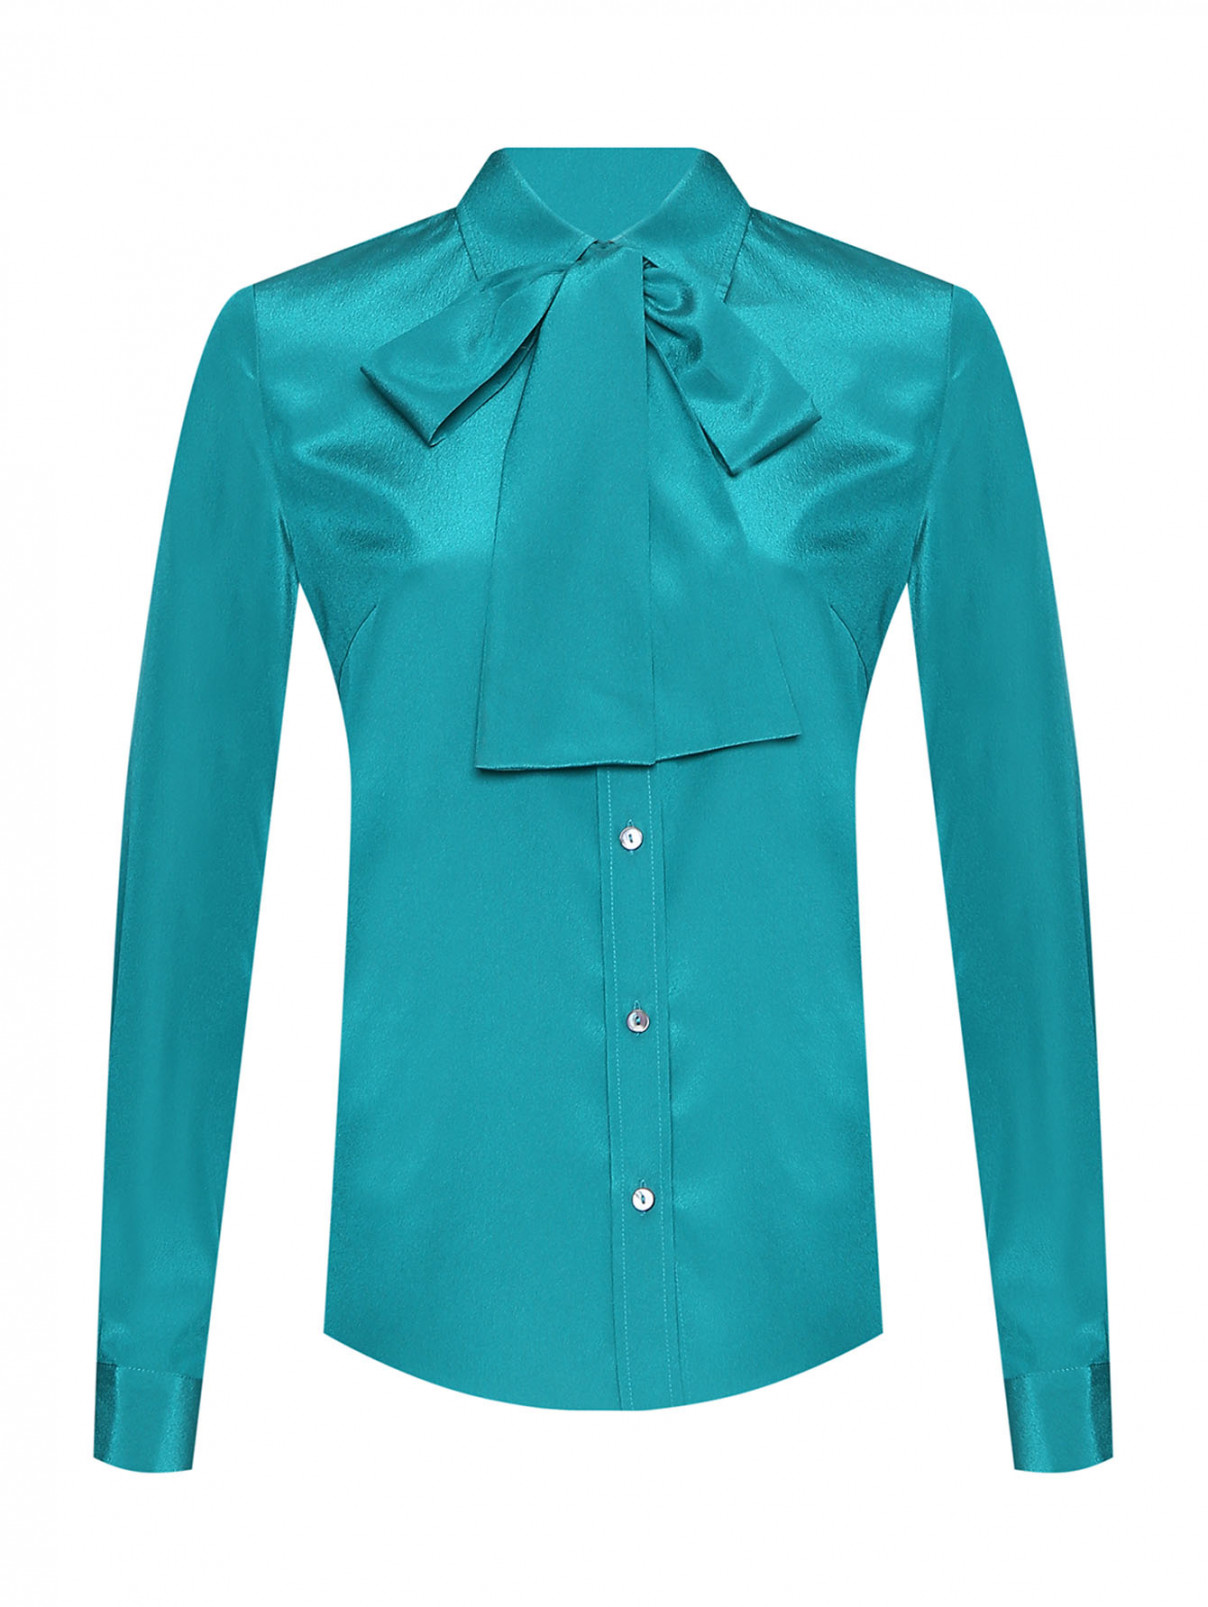 Однотонная блуза на пуговицах P.A.R.O.S.H.  –  Общий вид  – Цвет:  Зеленый